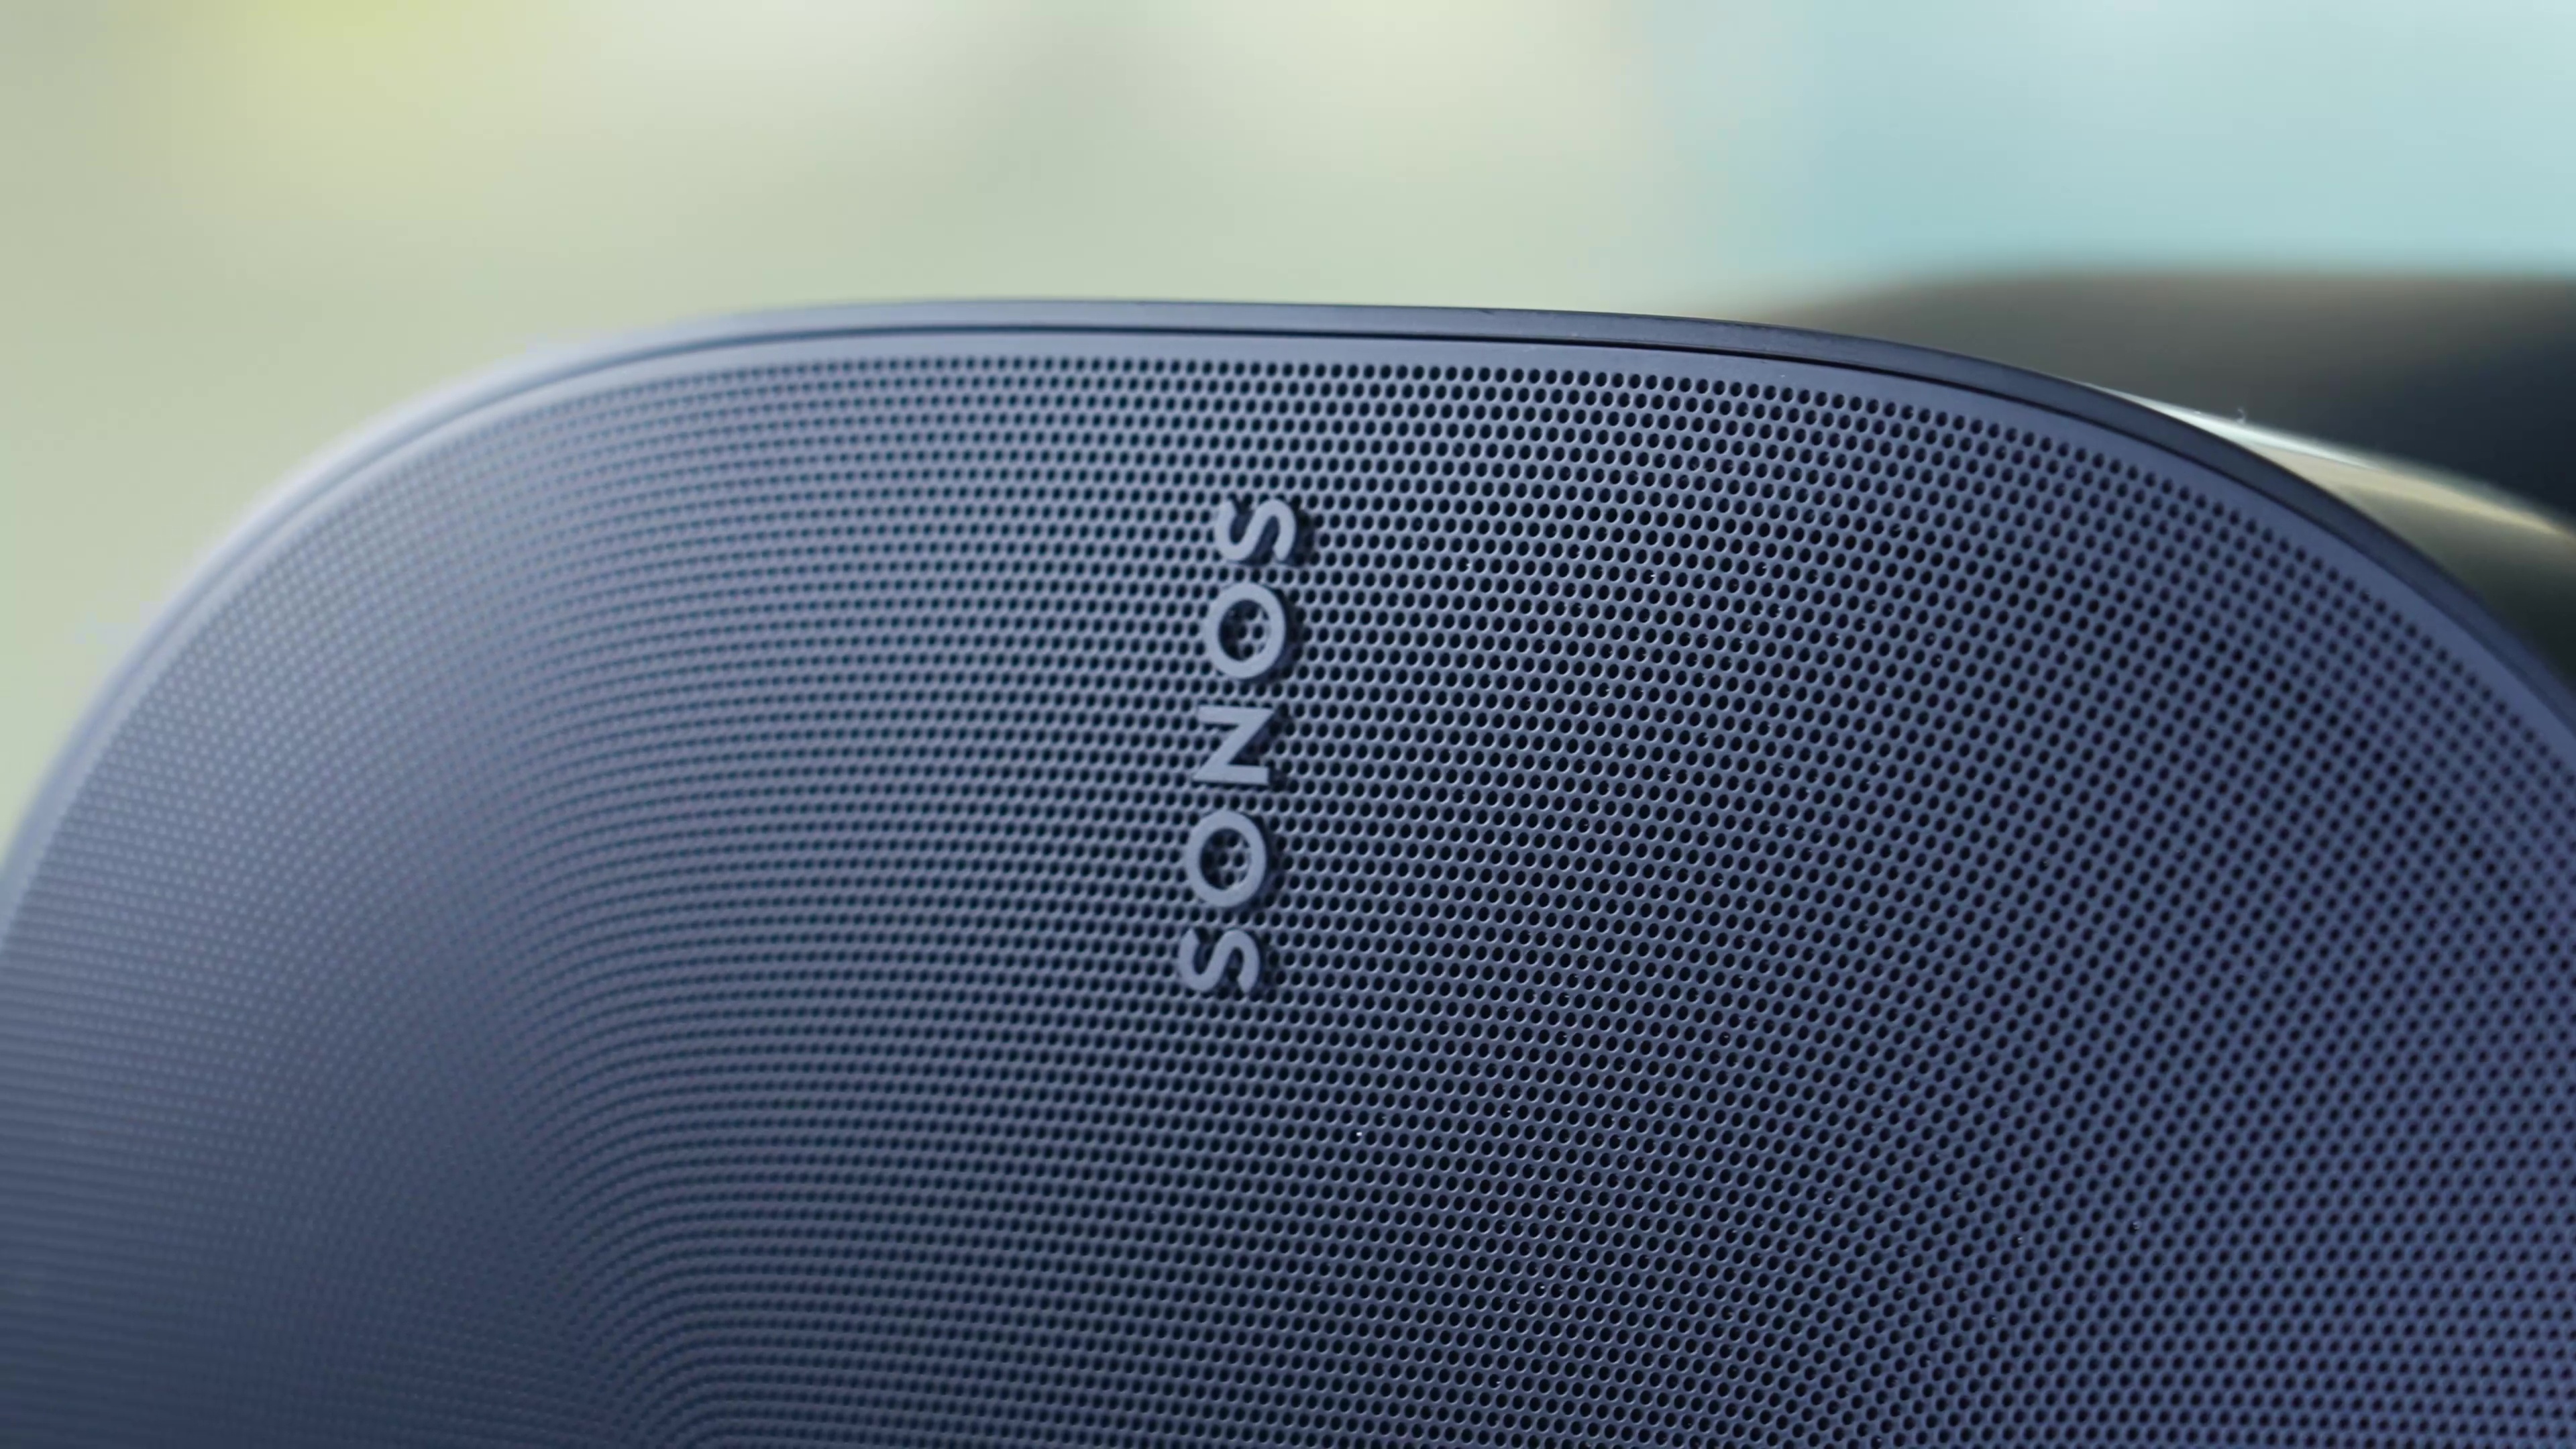 دستگاه پخش Sonos با اپل، Roku رقابت خواهد کرد